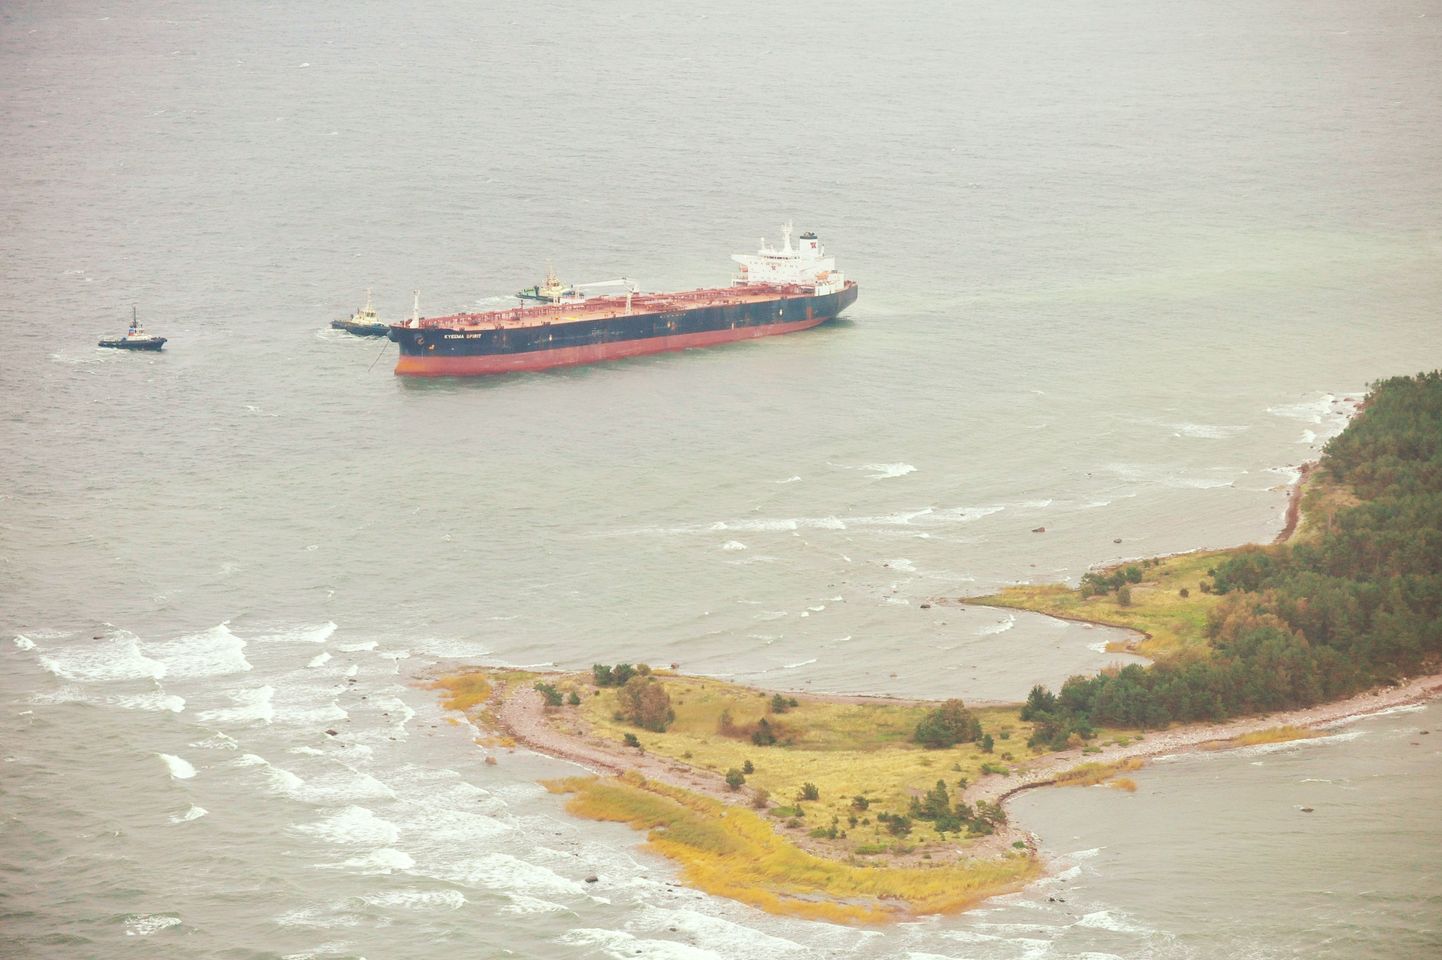 OILRISK veebi rakendati olukorra hindamiseks mullu septembris, kui tanker Kyeema Spirit oli Aegna saare juures madalikule sõitnud.